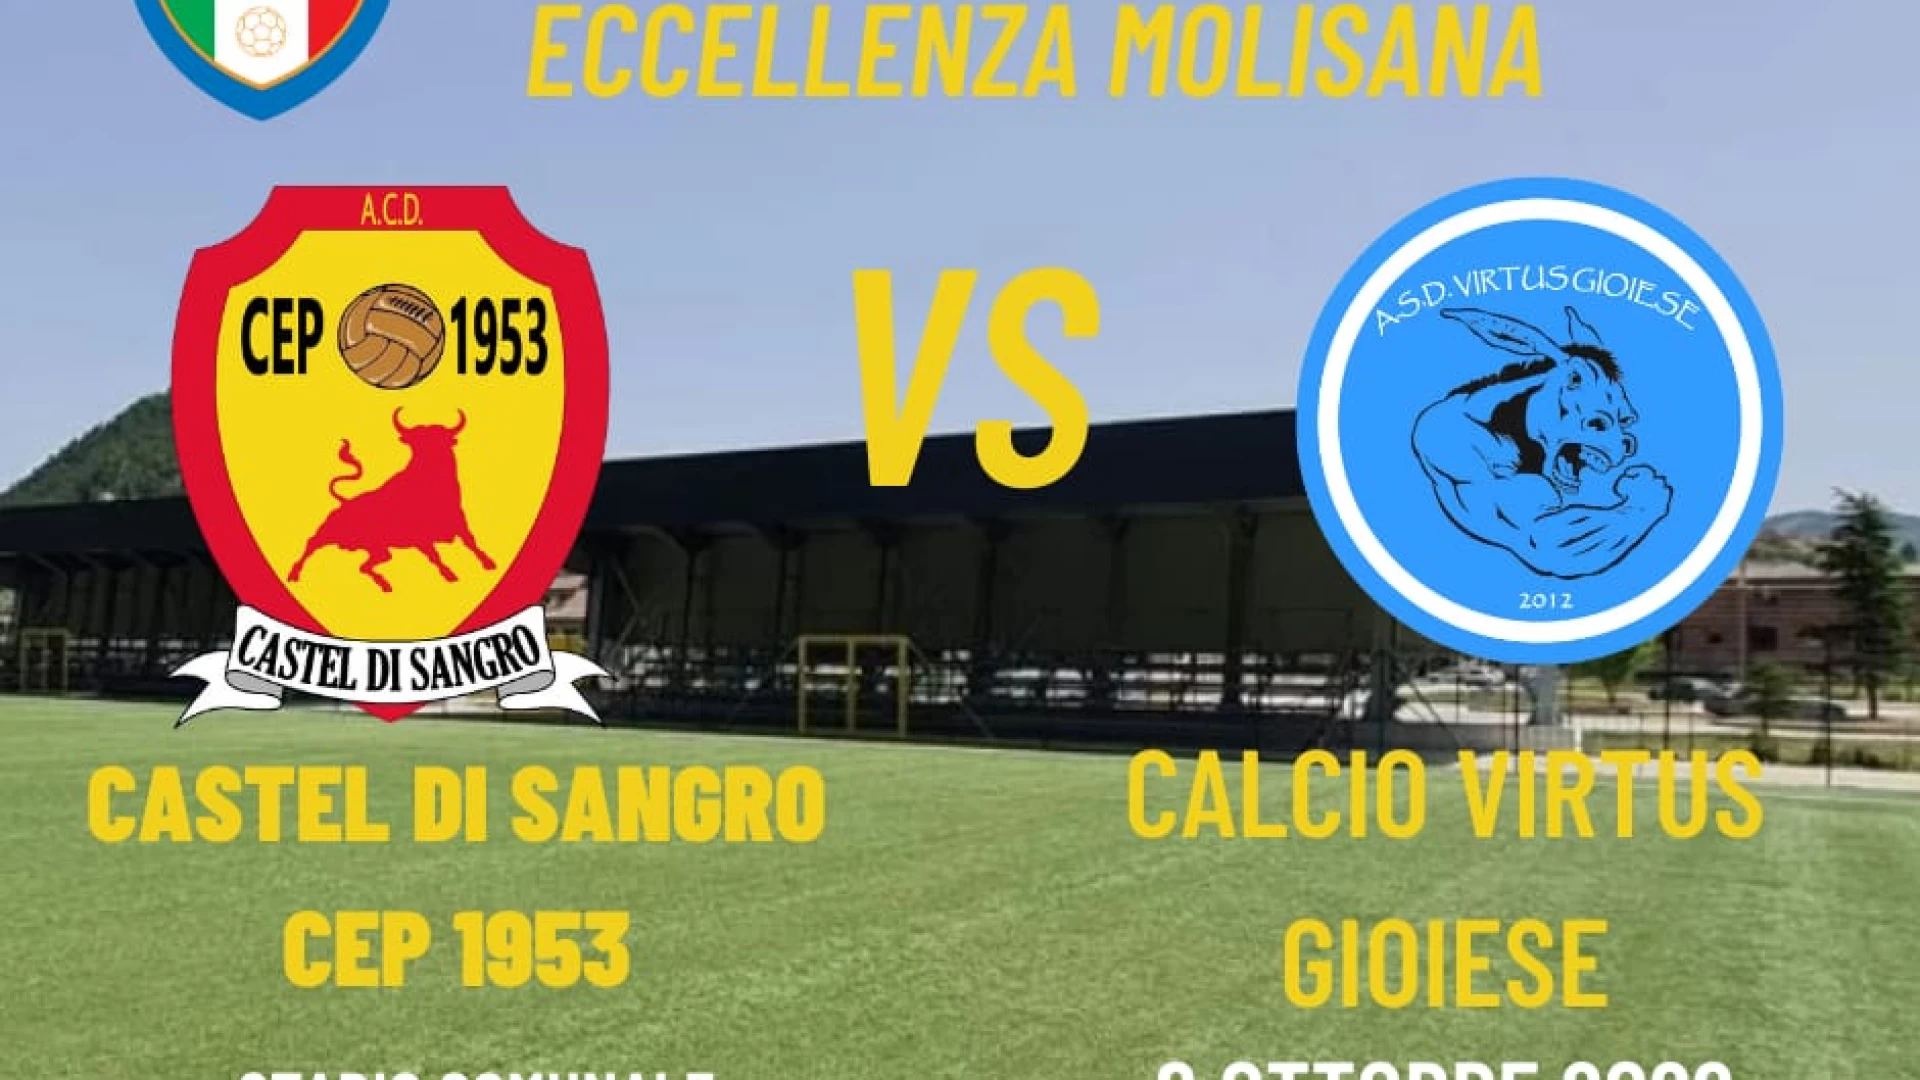 Eccellenza: nel pomeriggio Castel Di Sangro Cep 1953-Calcio Virtus Gioiese